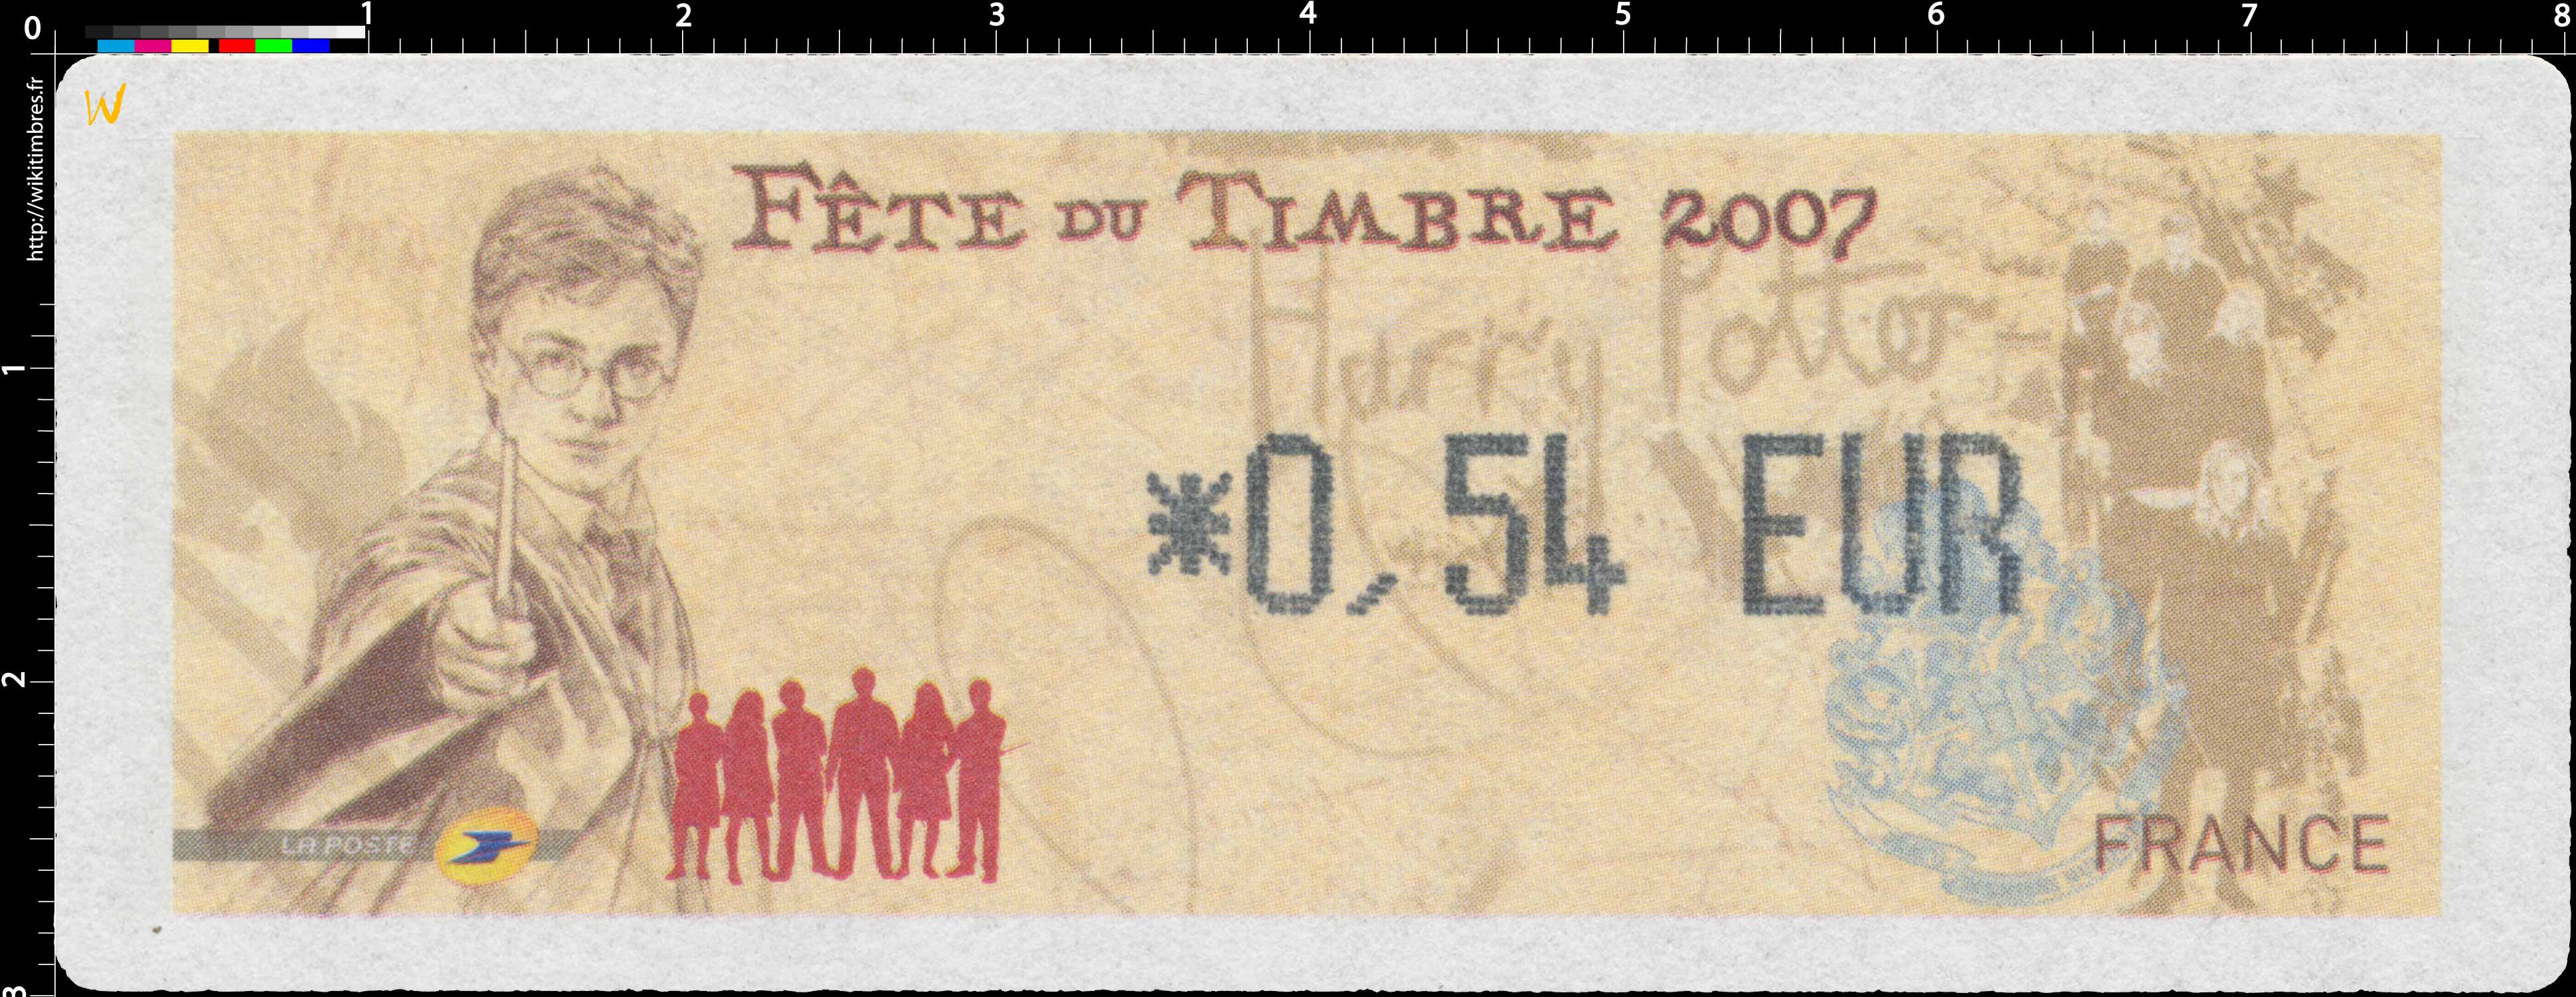 2007 Fêtes du timbre